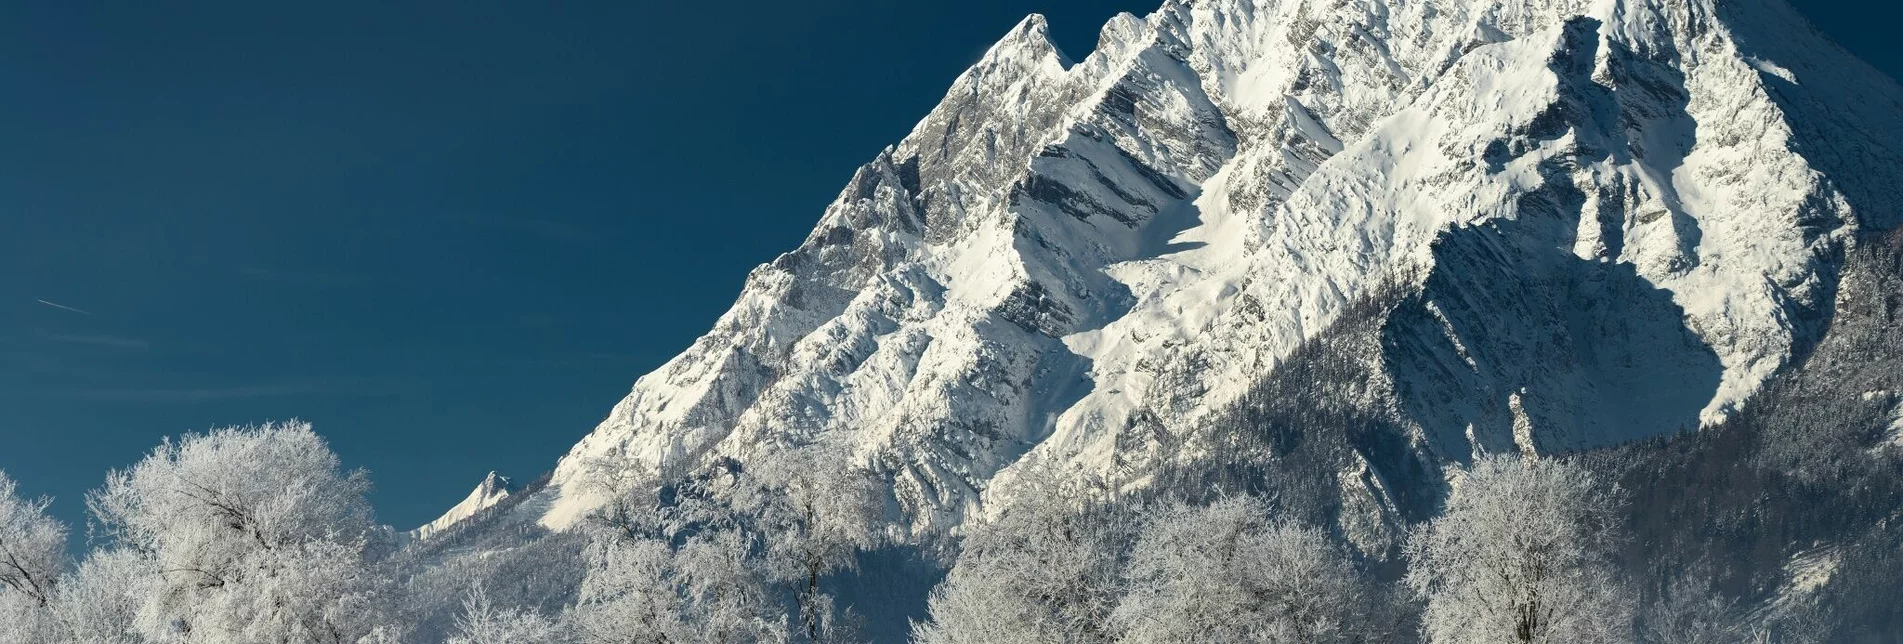 Winterwandern Irdninger Moosrundwanderweg im Winter - Touren-Impression #1 | © Erlebnisregion Schladming-Dachstein